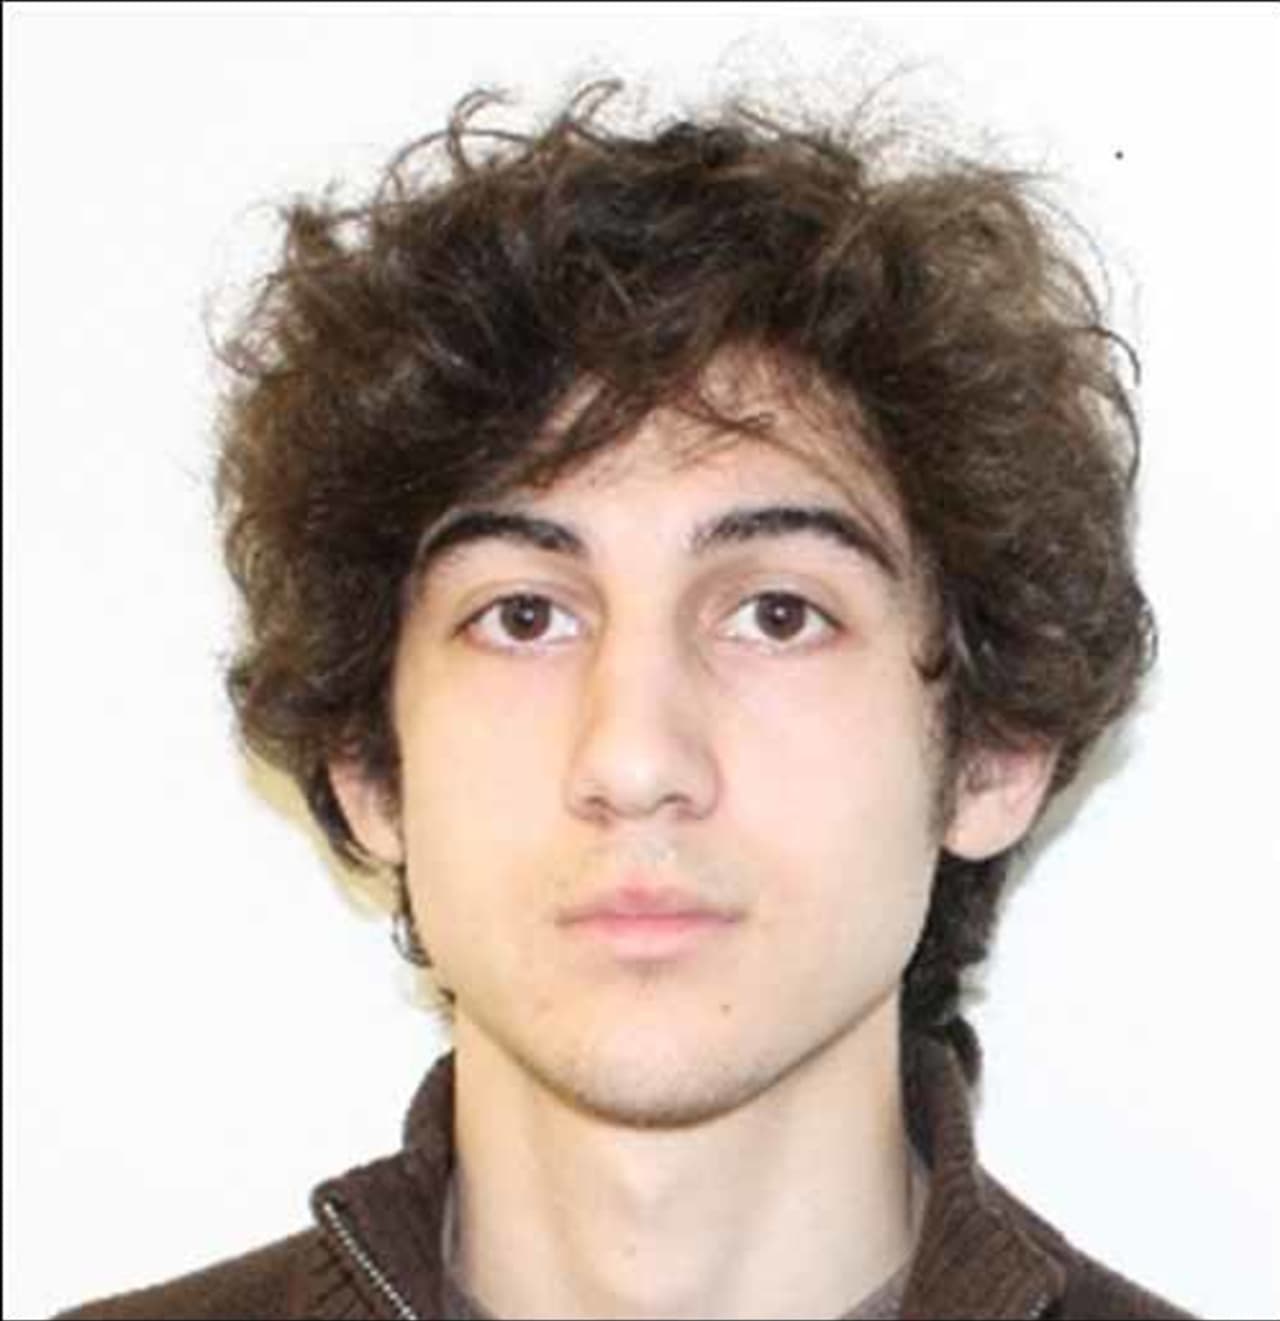 Boston Marathon bombing suspect Dzhokhar Tsarnaev